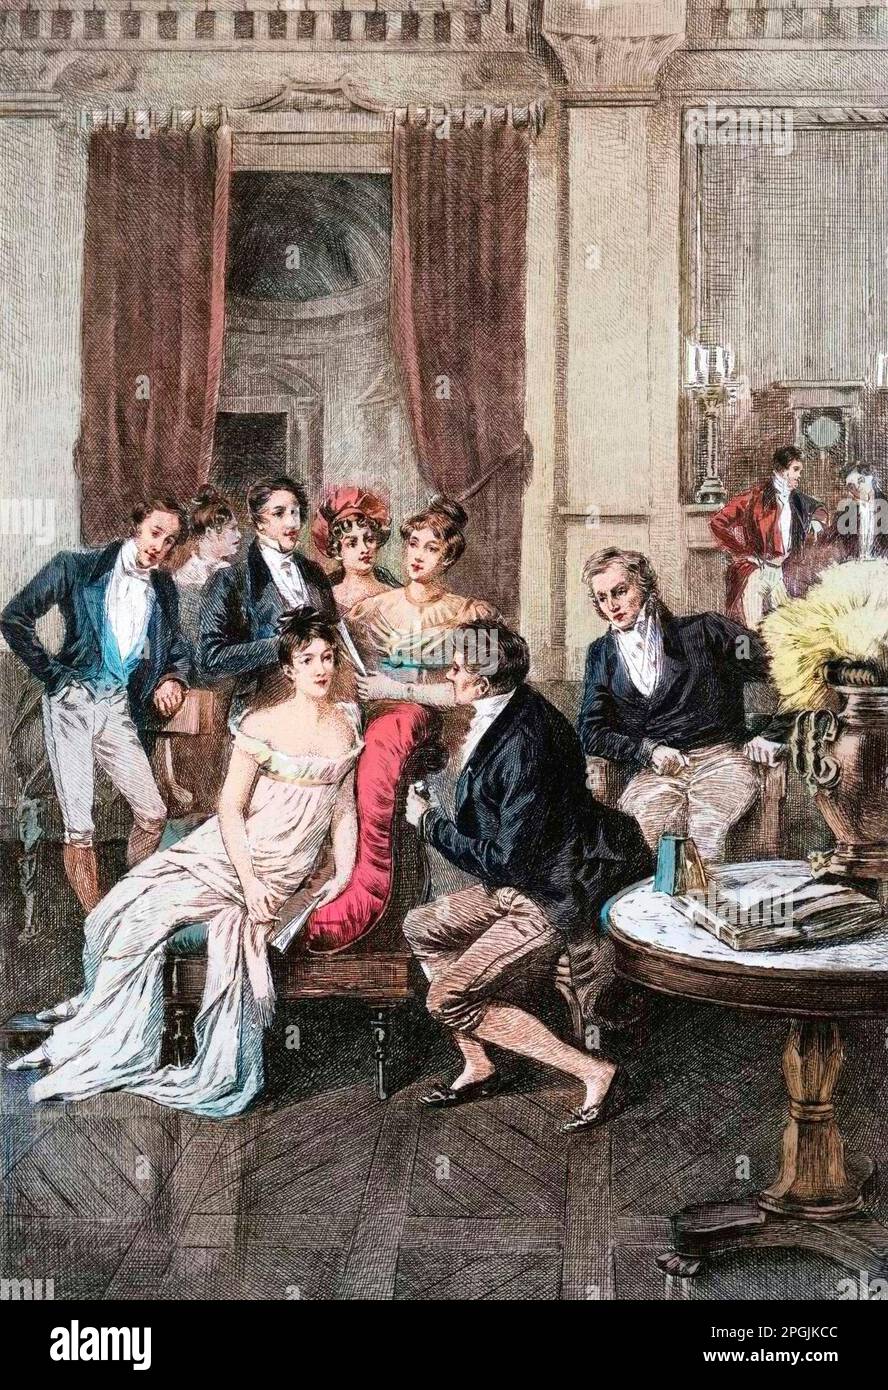 The Salon of Madame de Recamier - Salon litteraire : 'Autour de madame Recamier' Madame Juliette Recamier (1777-1849) entouree par les personnalites litteraires et politiques : Charles Nodier (1780-1844), Francois Rene vicomte de Chateaubriand (1768-1848), Sophie Gay (1776-1852), Benjamin Constant (1767-1830), Madame Ancelot (1792-1875), Germaine Necker, baronne de Stael-Holstein dite Madame de Stael (1766-1817), Andre Marie Ampere (1775-1836). 19eme siecle Stock Photo